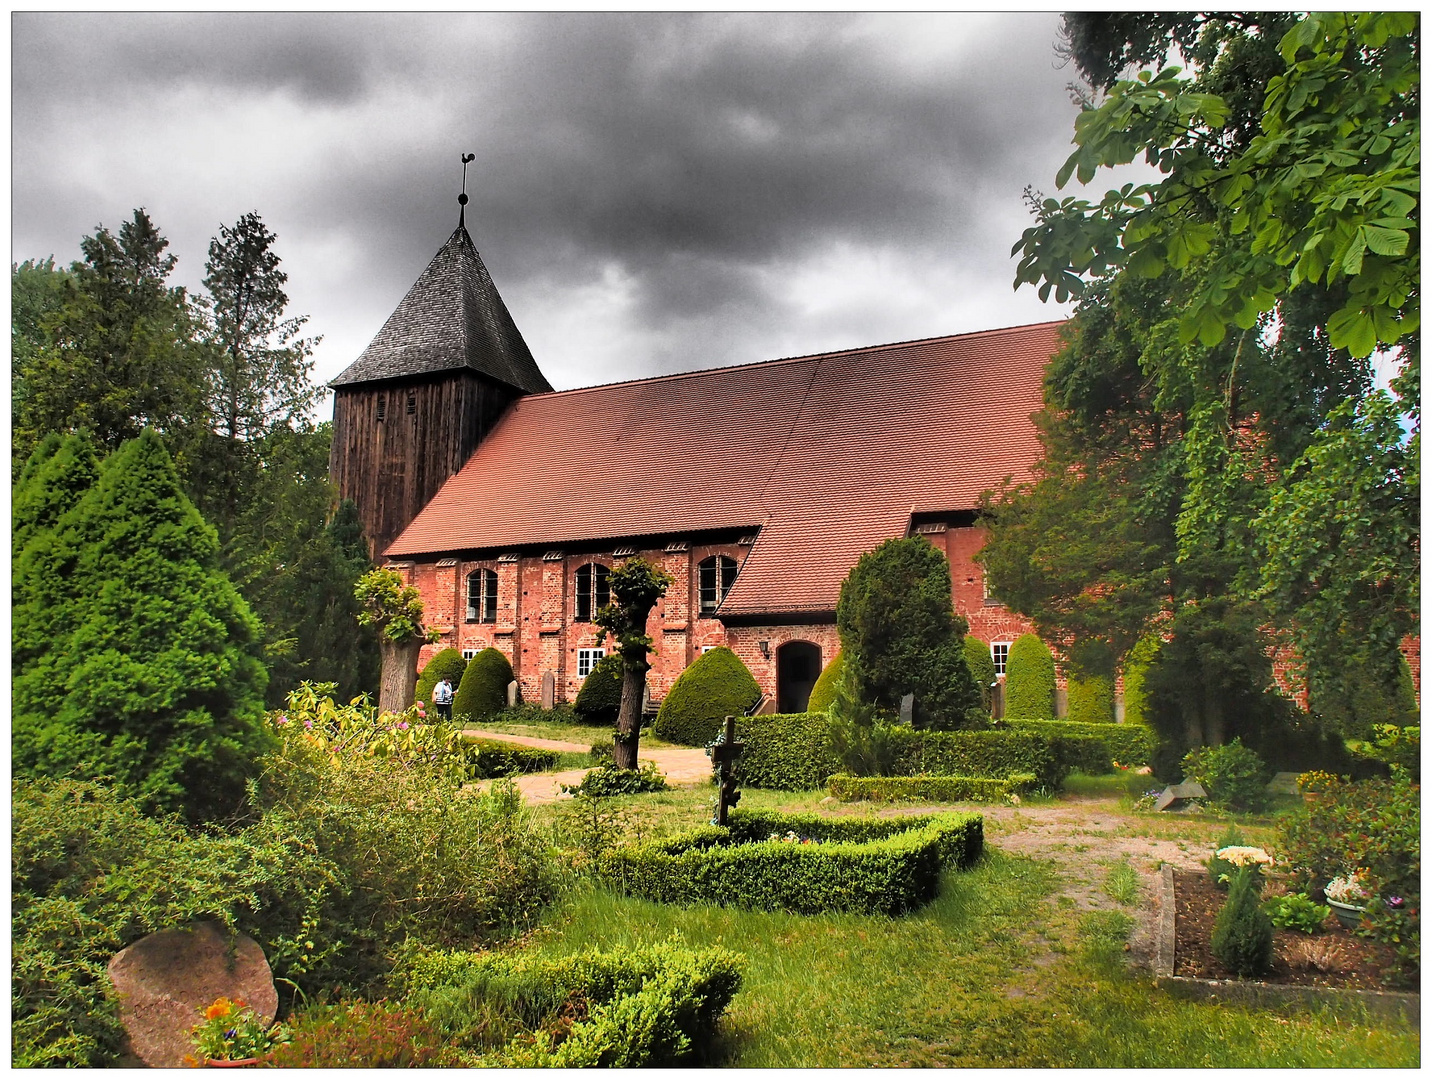 Seemannskirche Prerow mit Friedhof